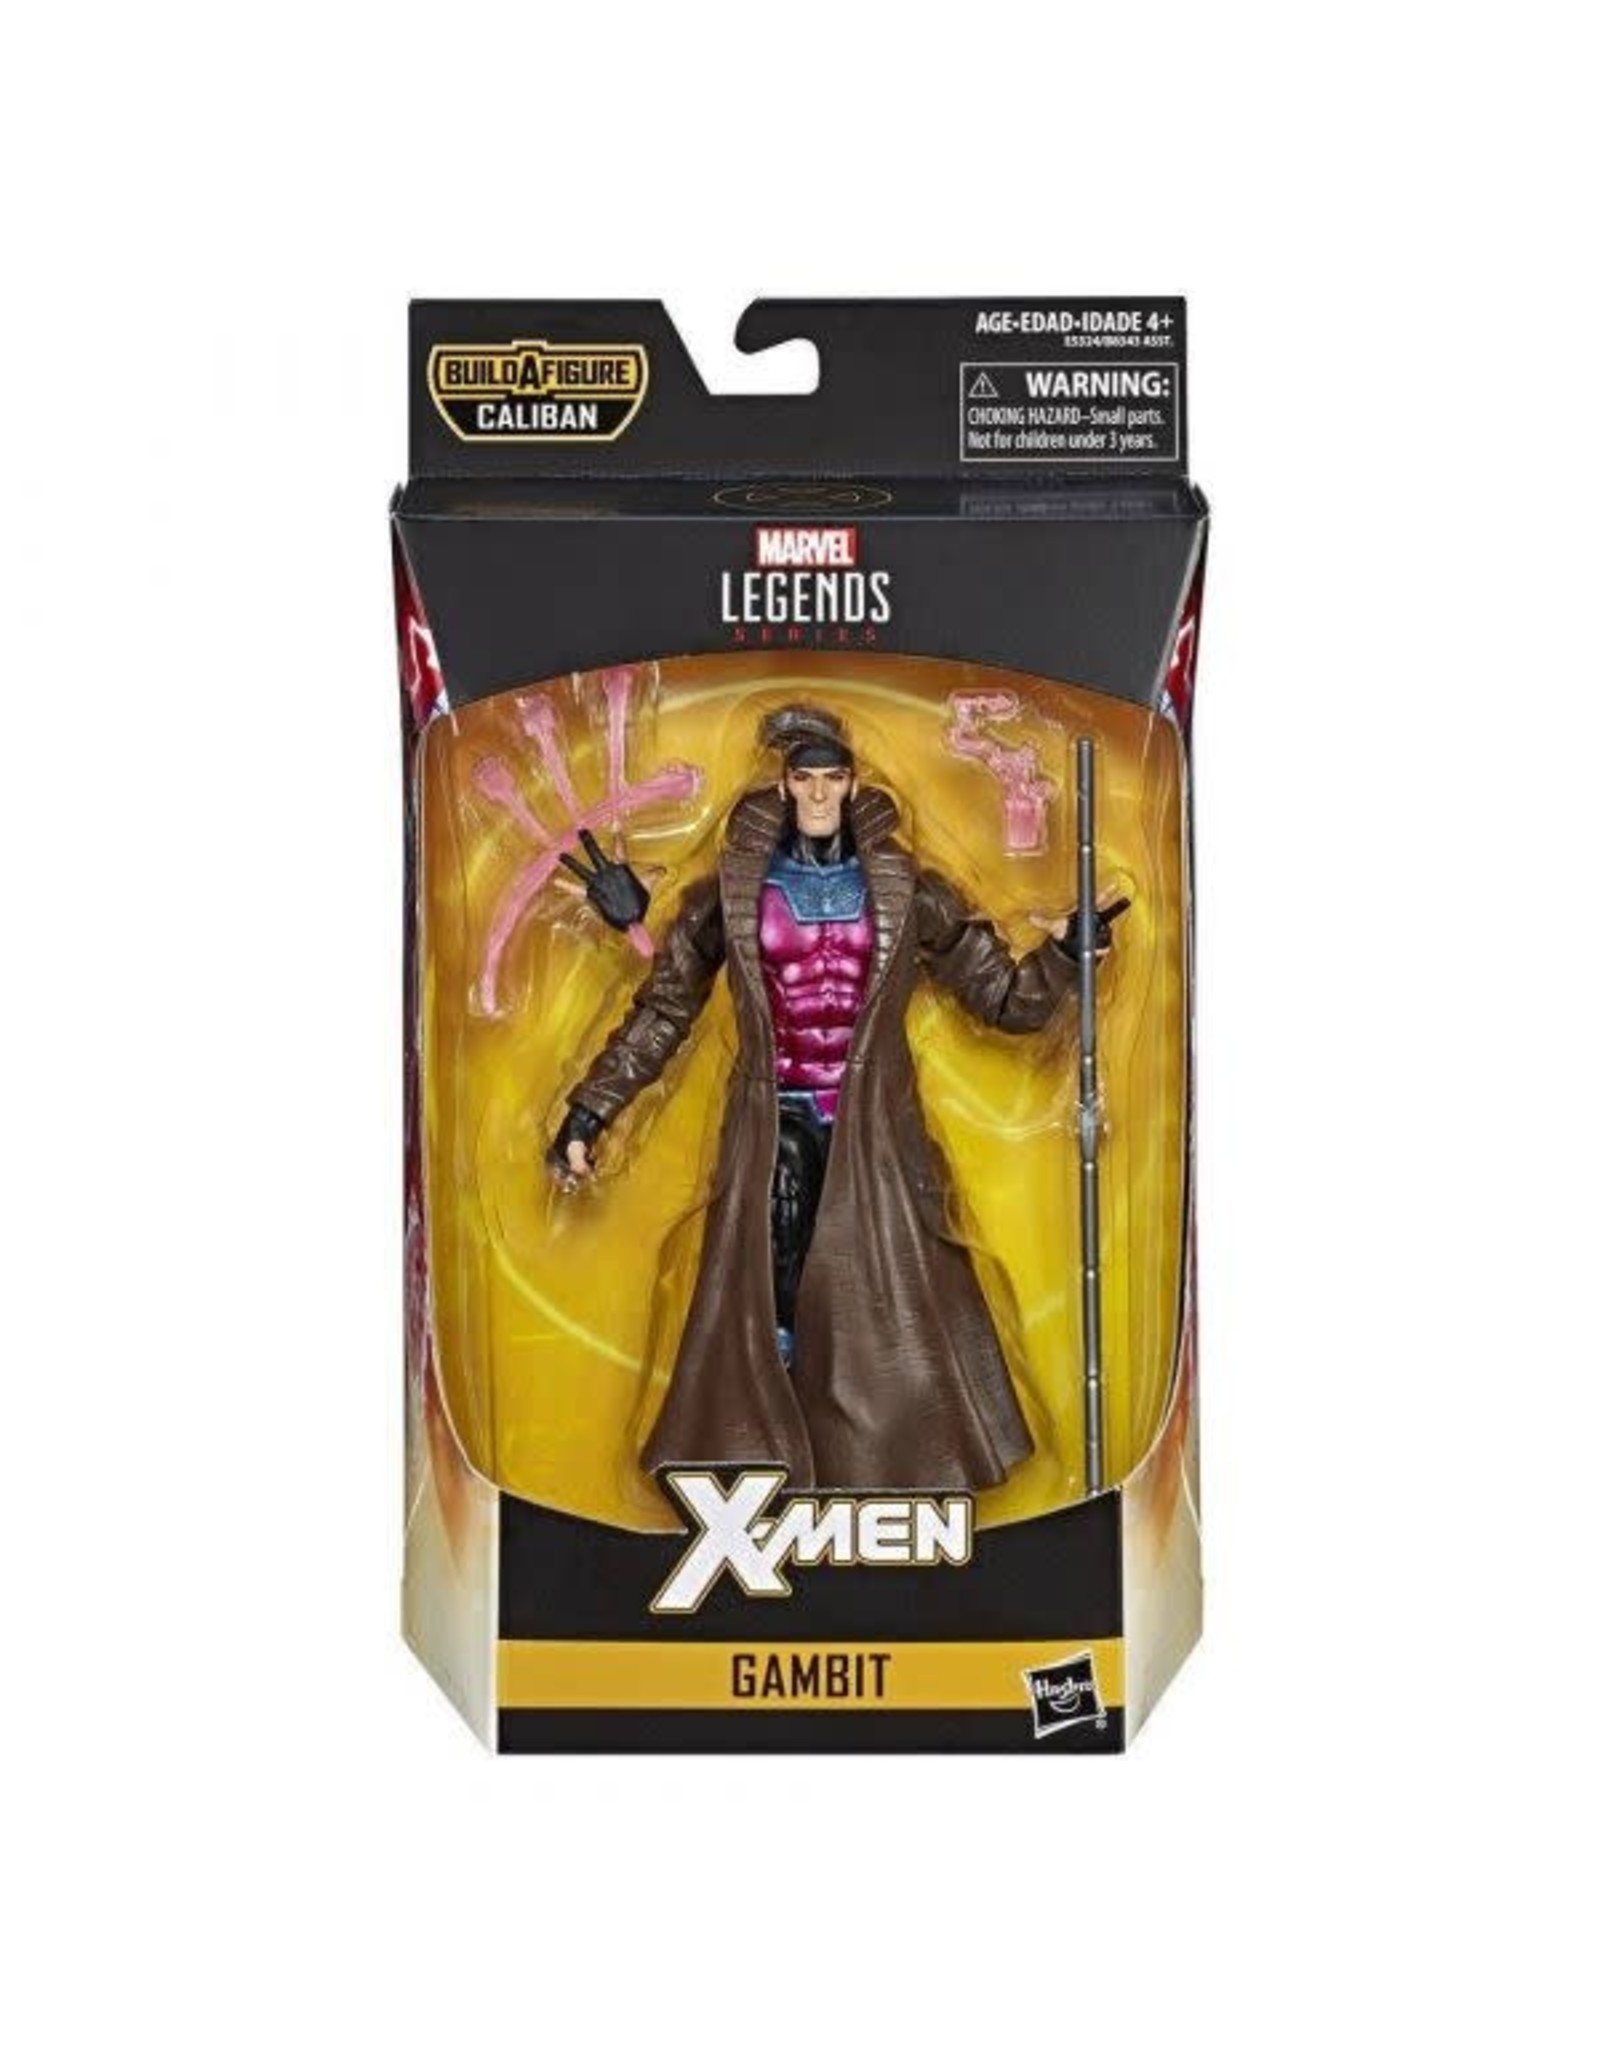 Hasbro X-MEN 2019 Marvel Legends Action Figure - Gambit